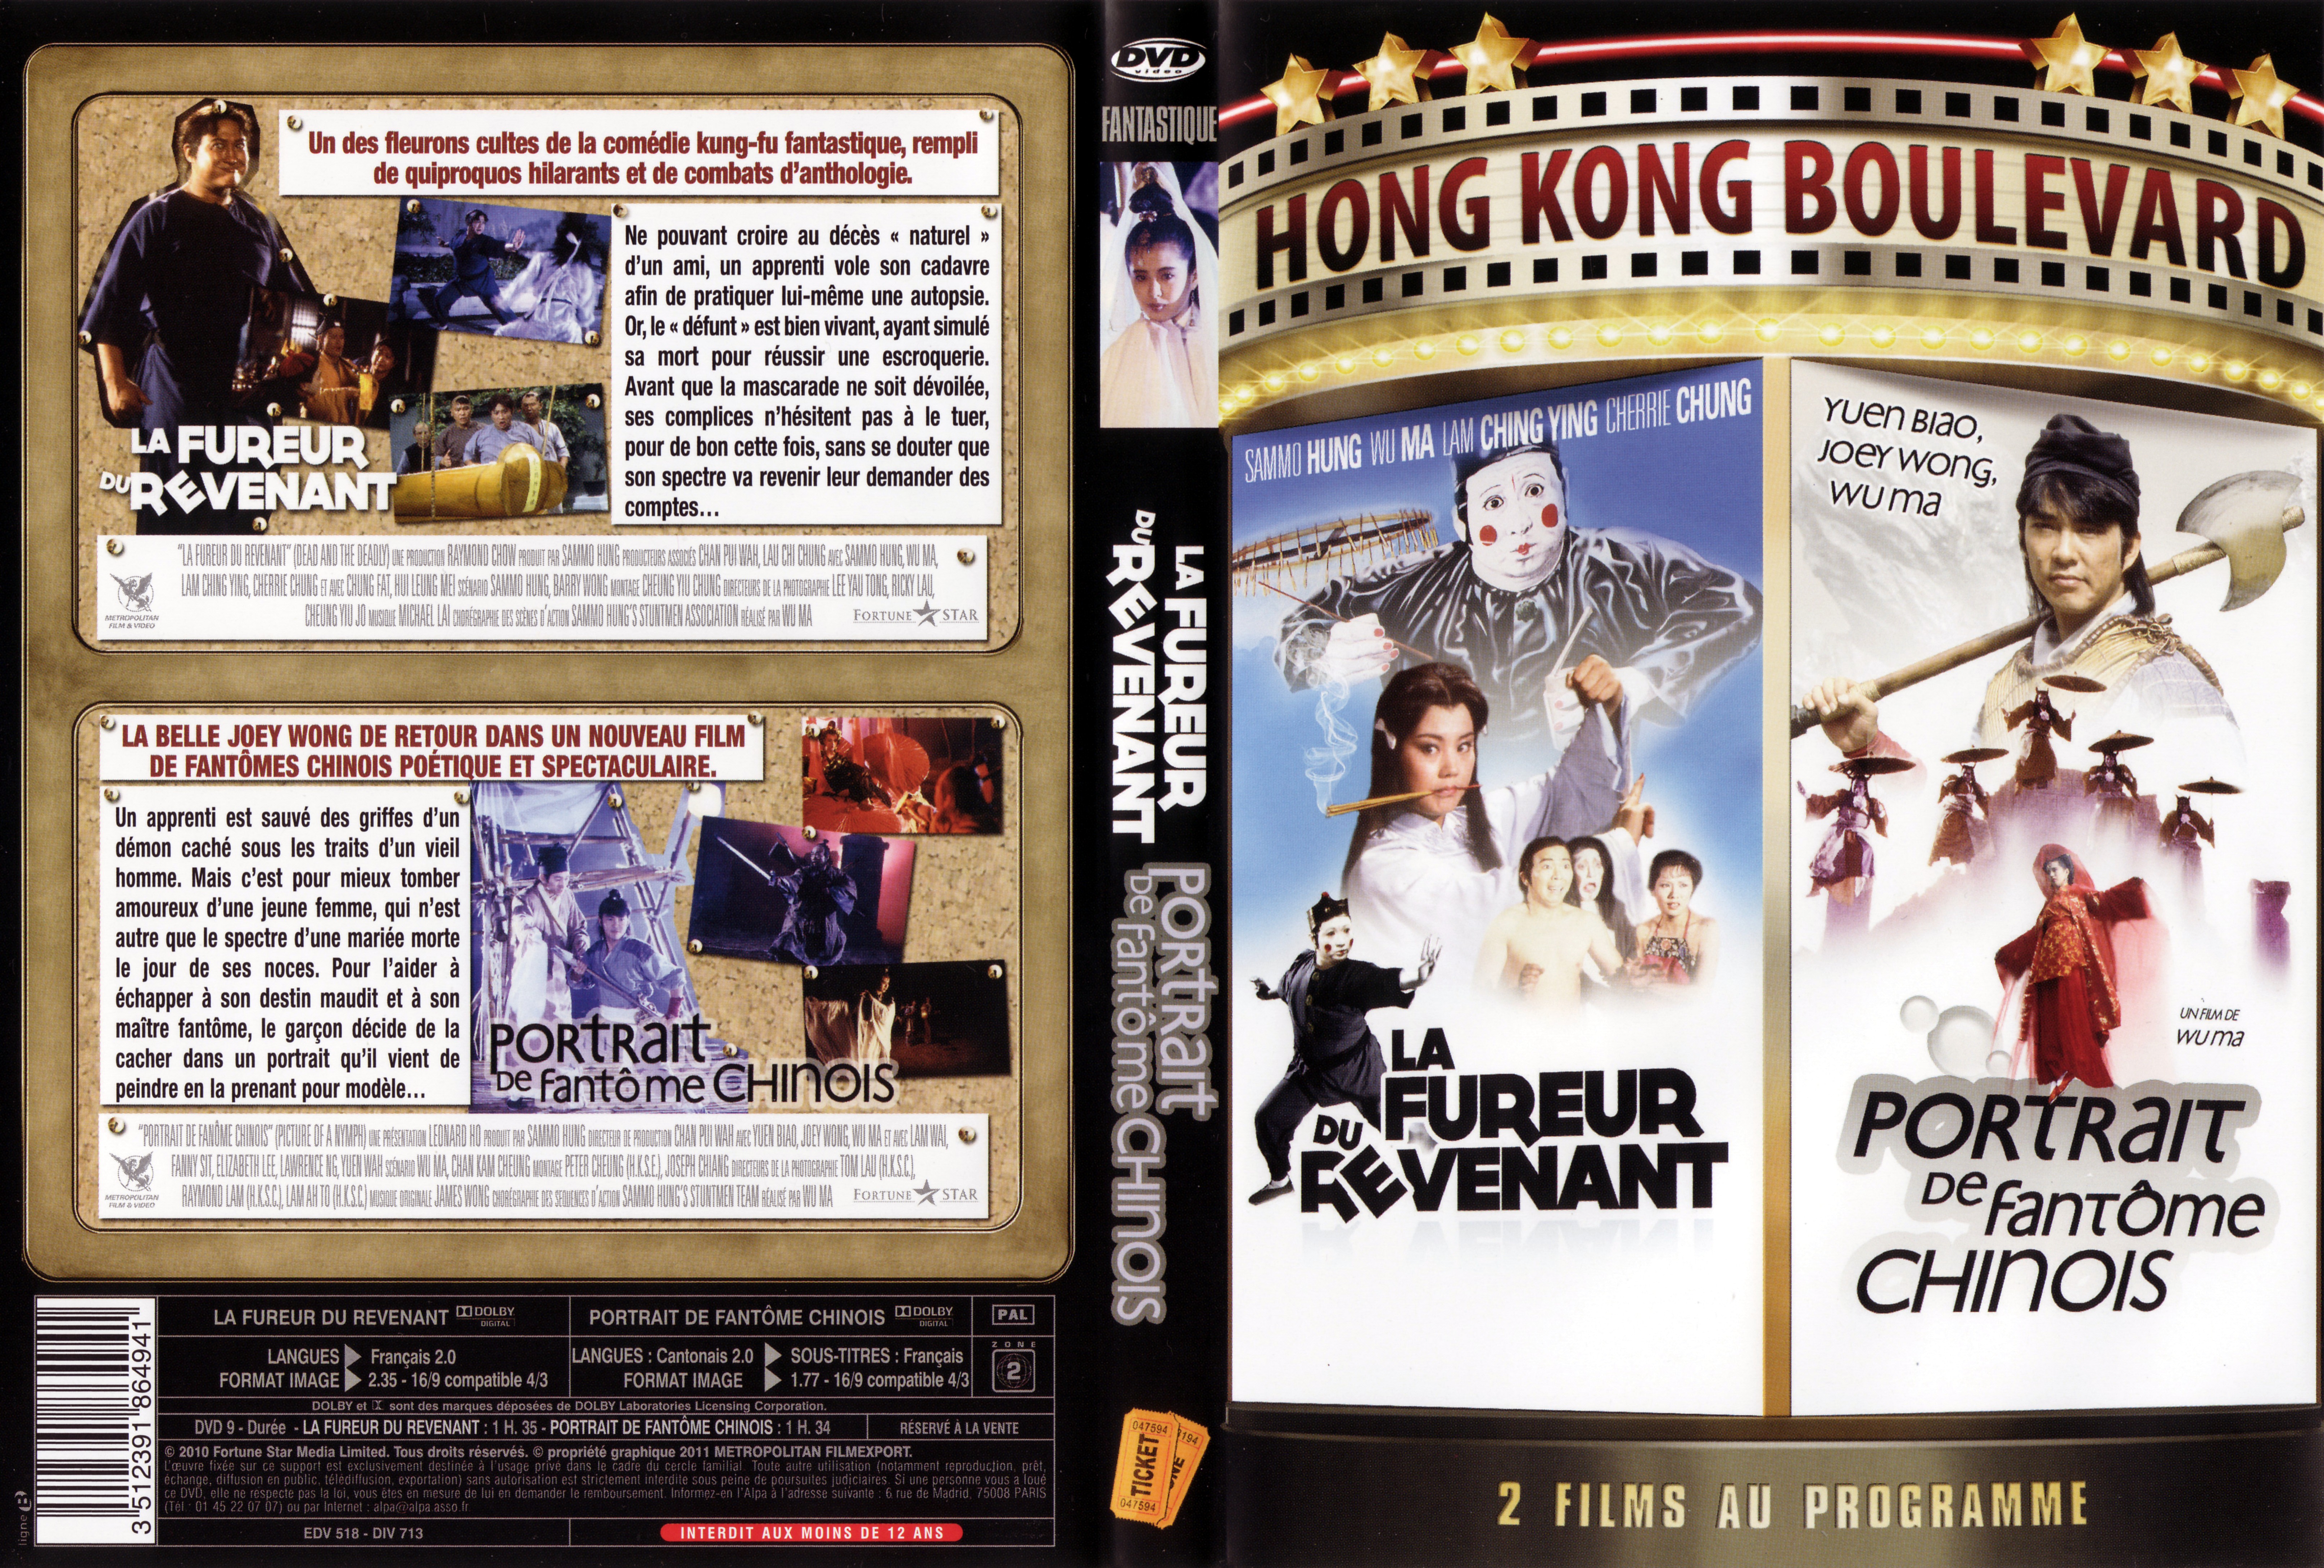 Jaquette DVD La fureur du revenant + Portrait de fantme chinois